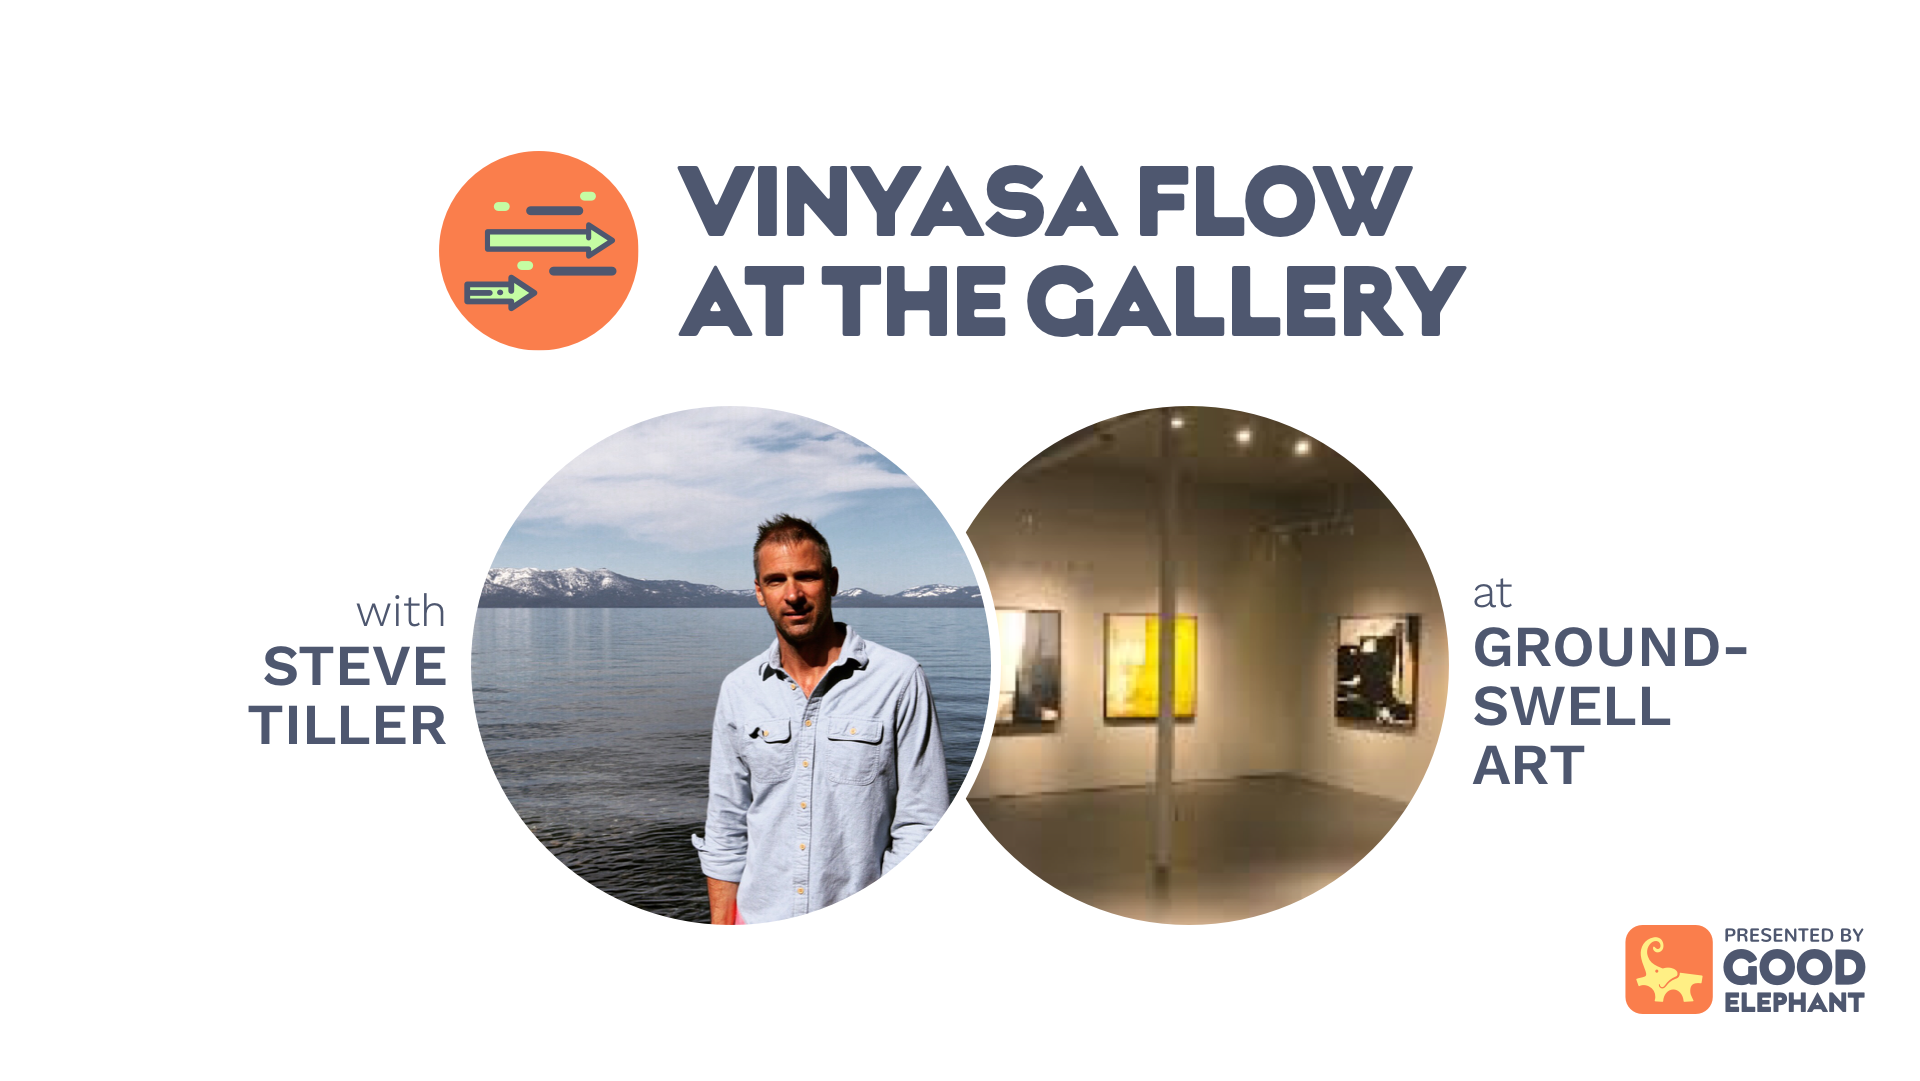 Vinyasa Flow at the Gallery